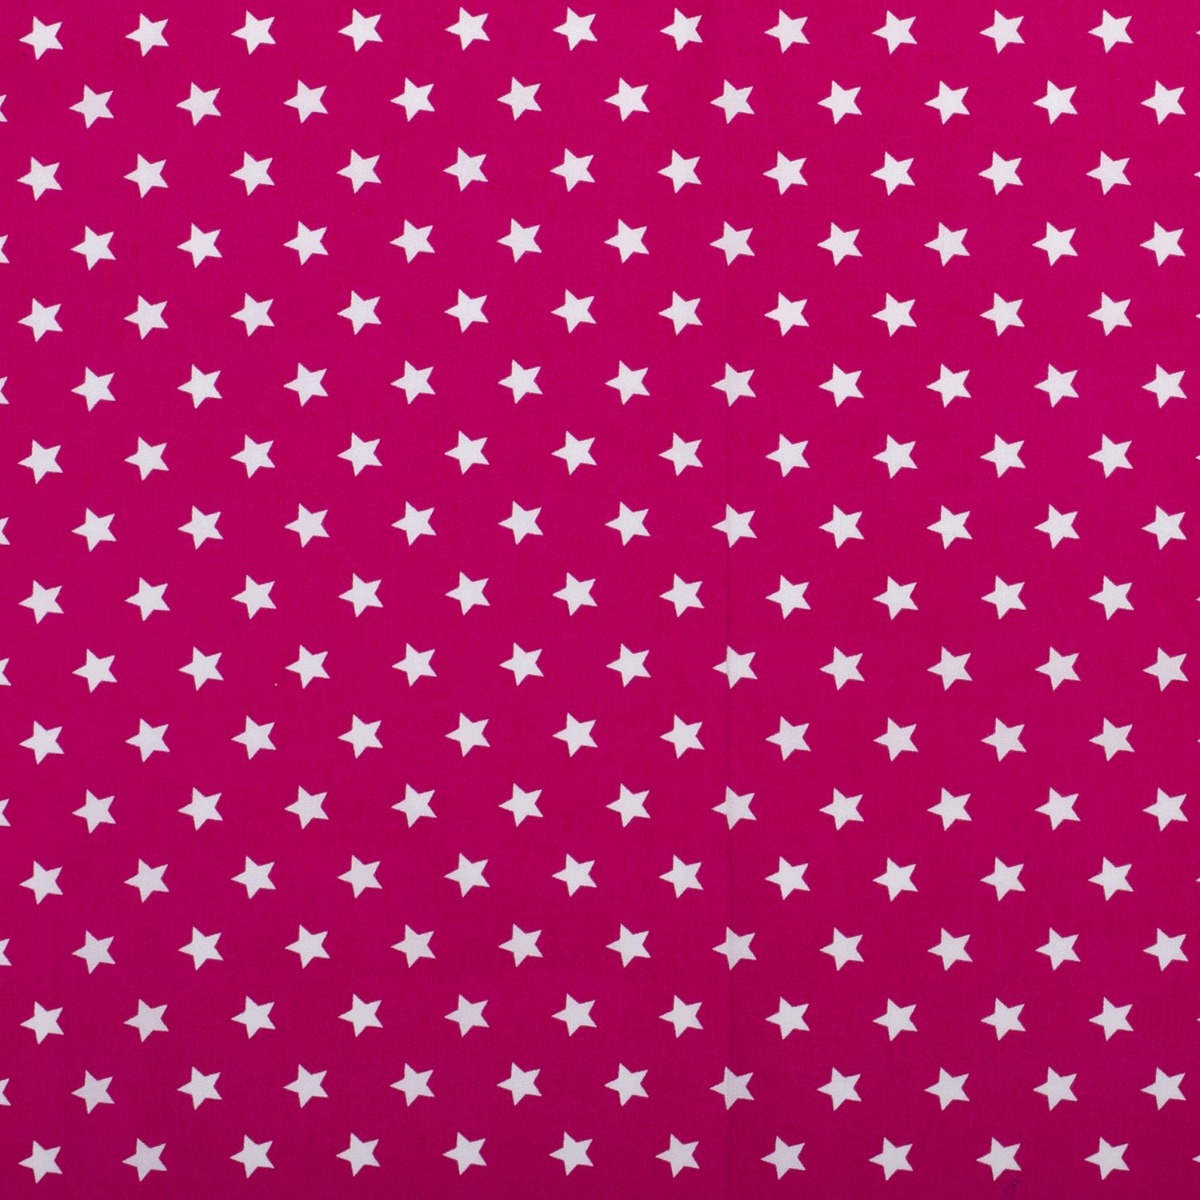 Baumwolle Sterne Standard Pink